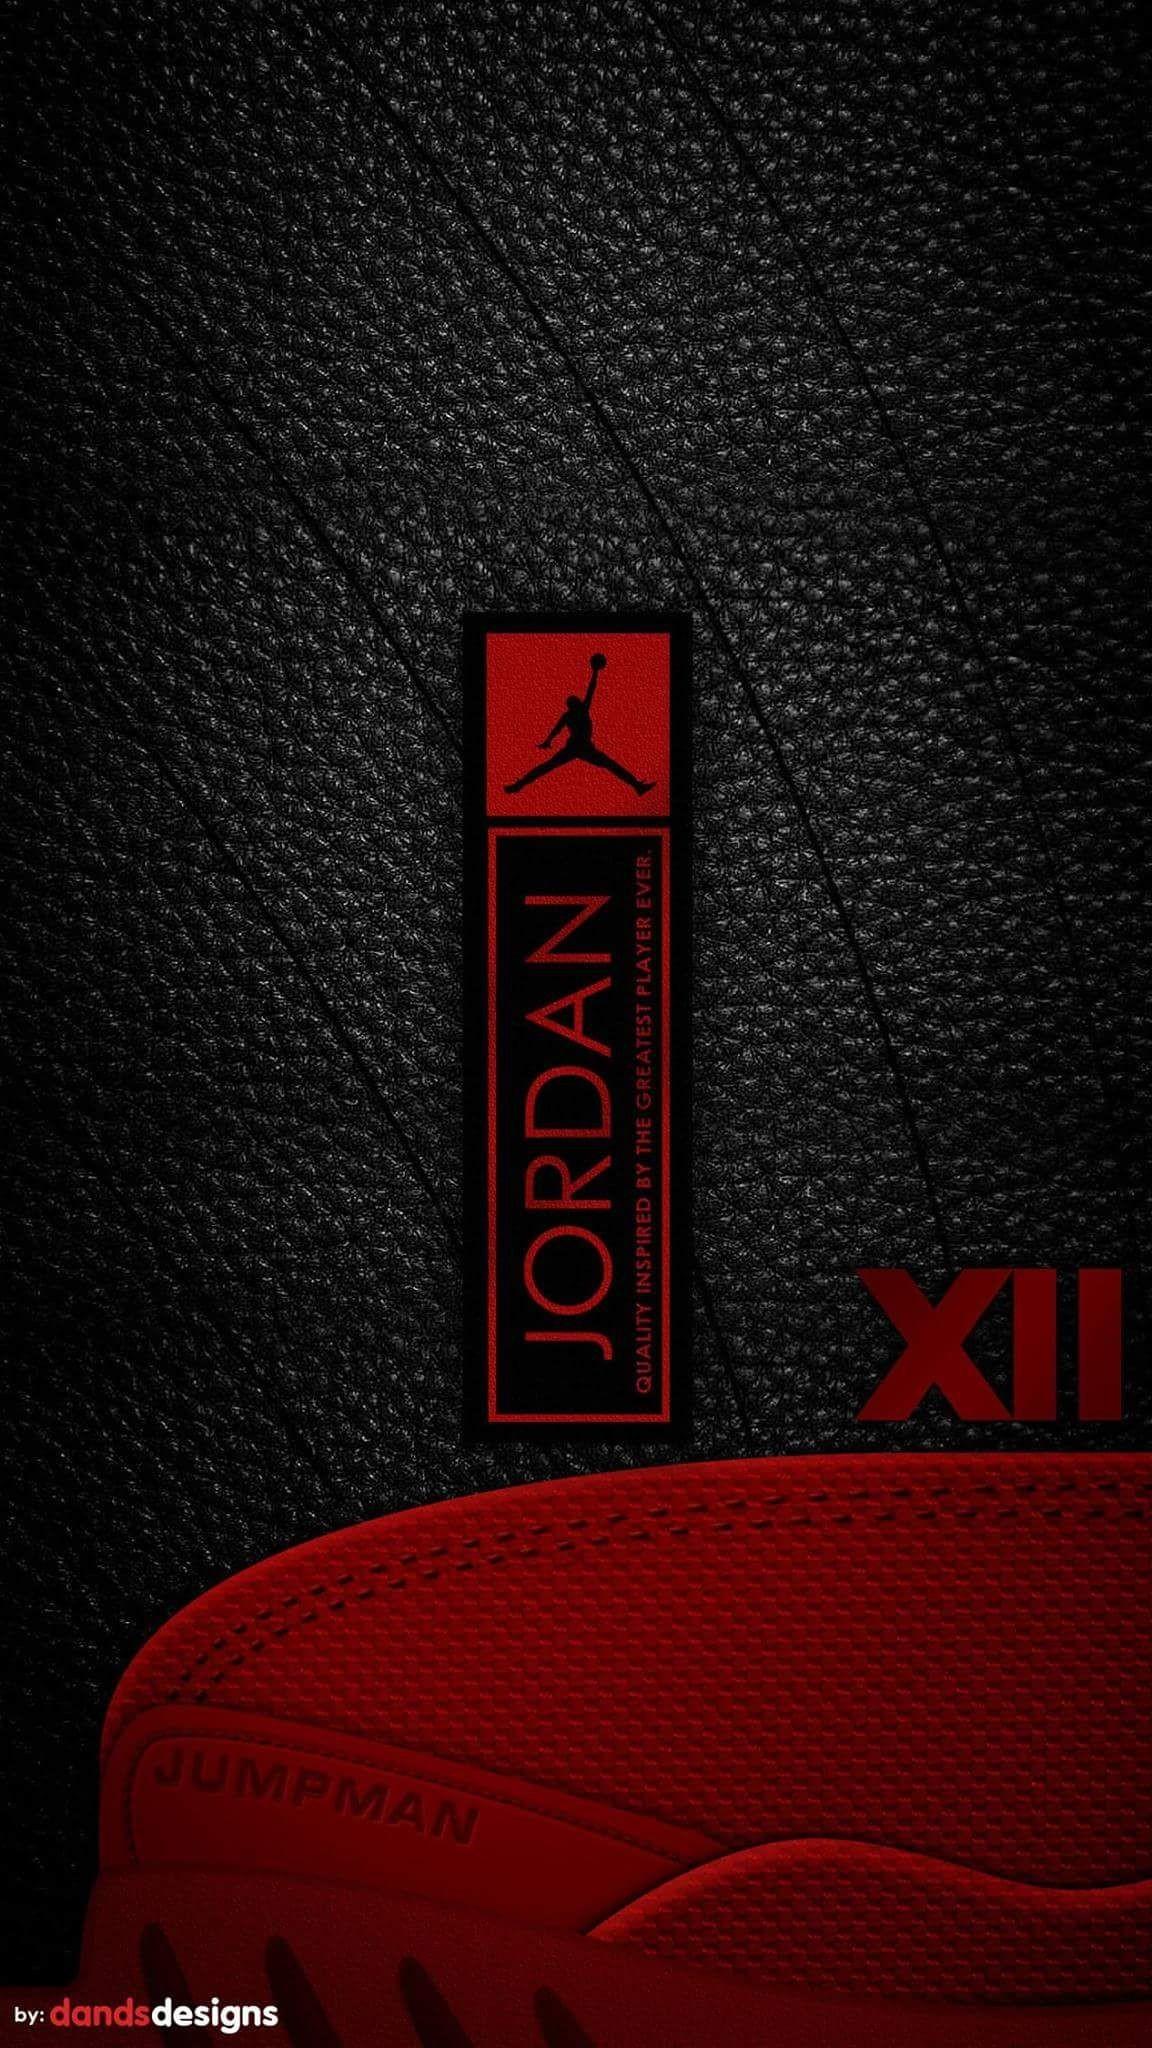 Air Jordan Iphone Wallpapers